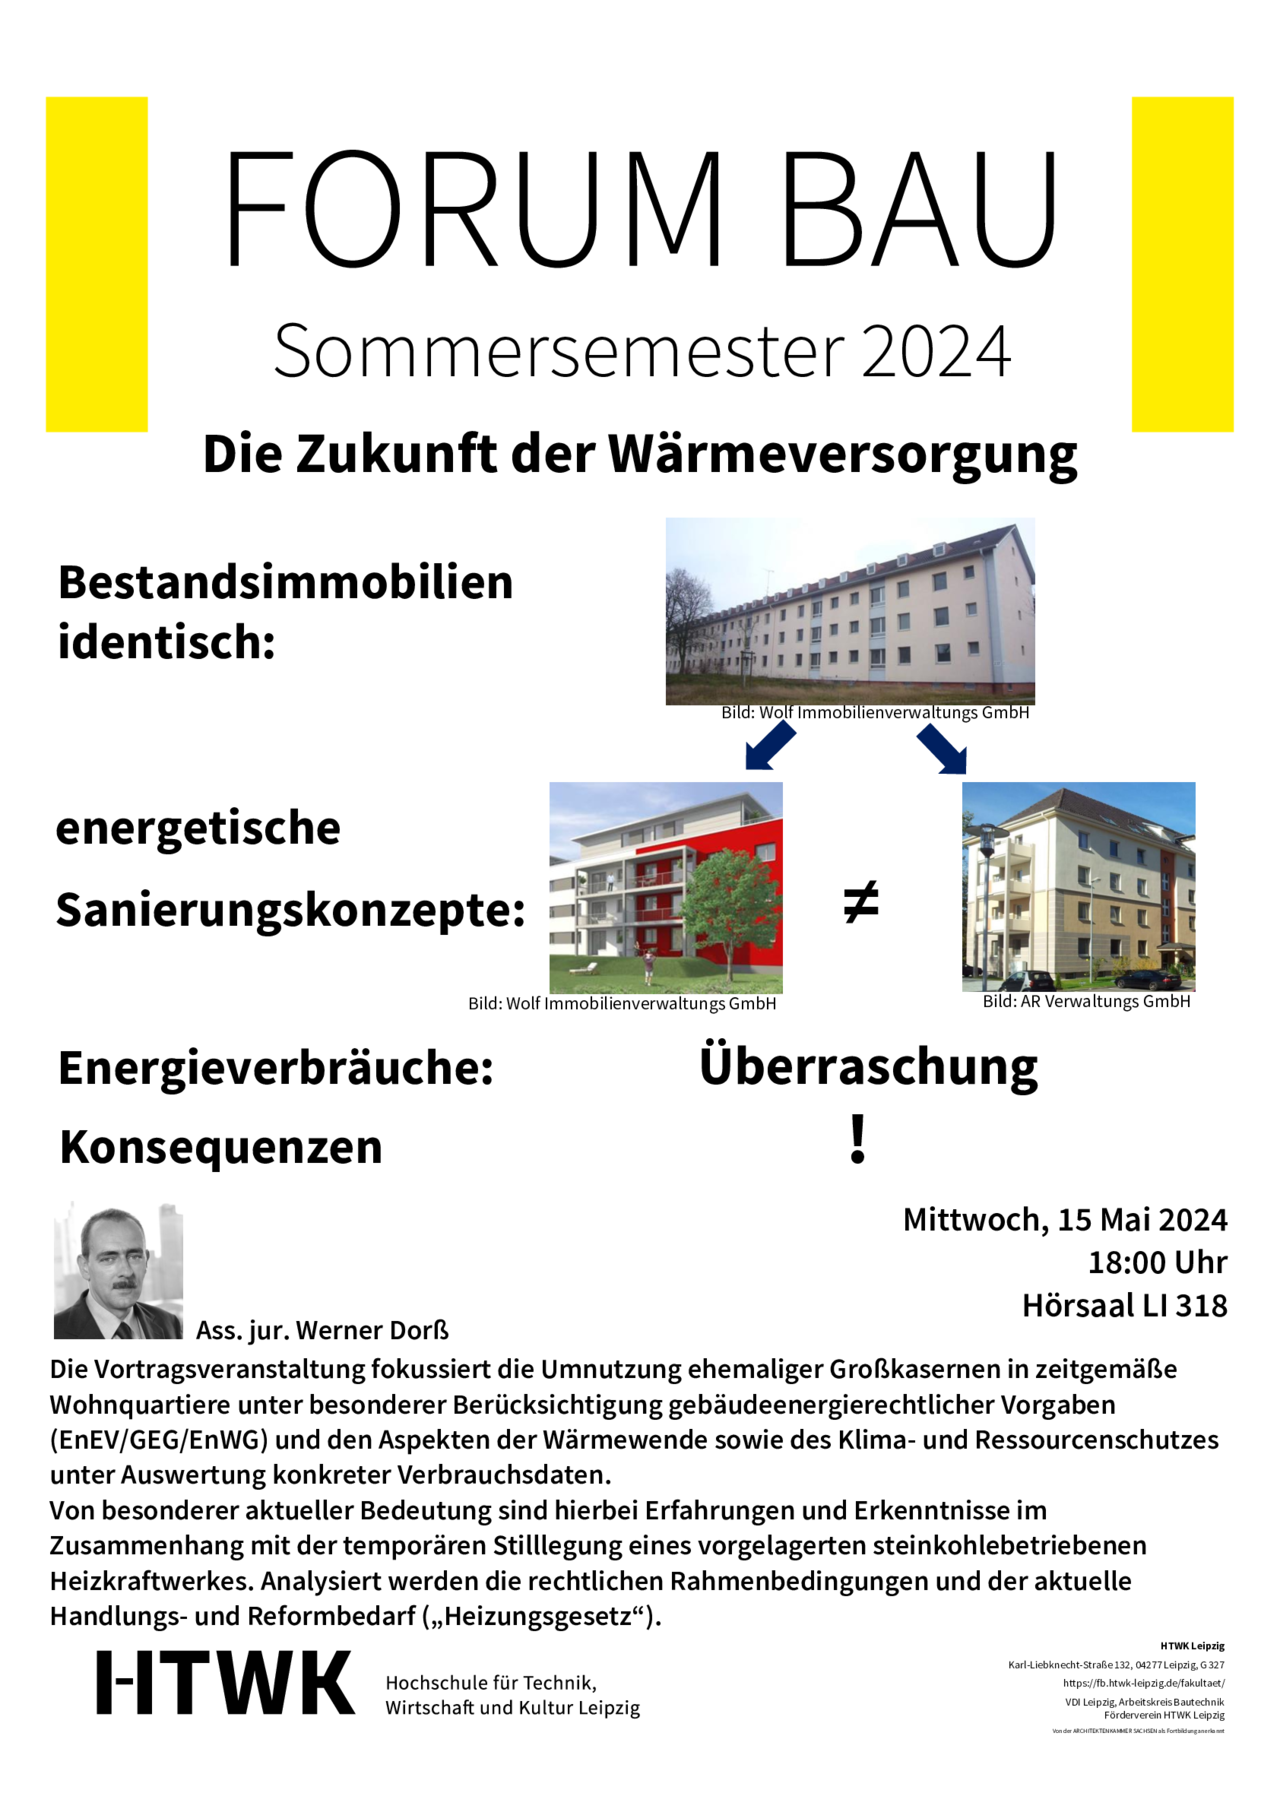 Plakat Forum Bau Sommersemester 2024 Zukunft der "Wärmeversorgung"